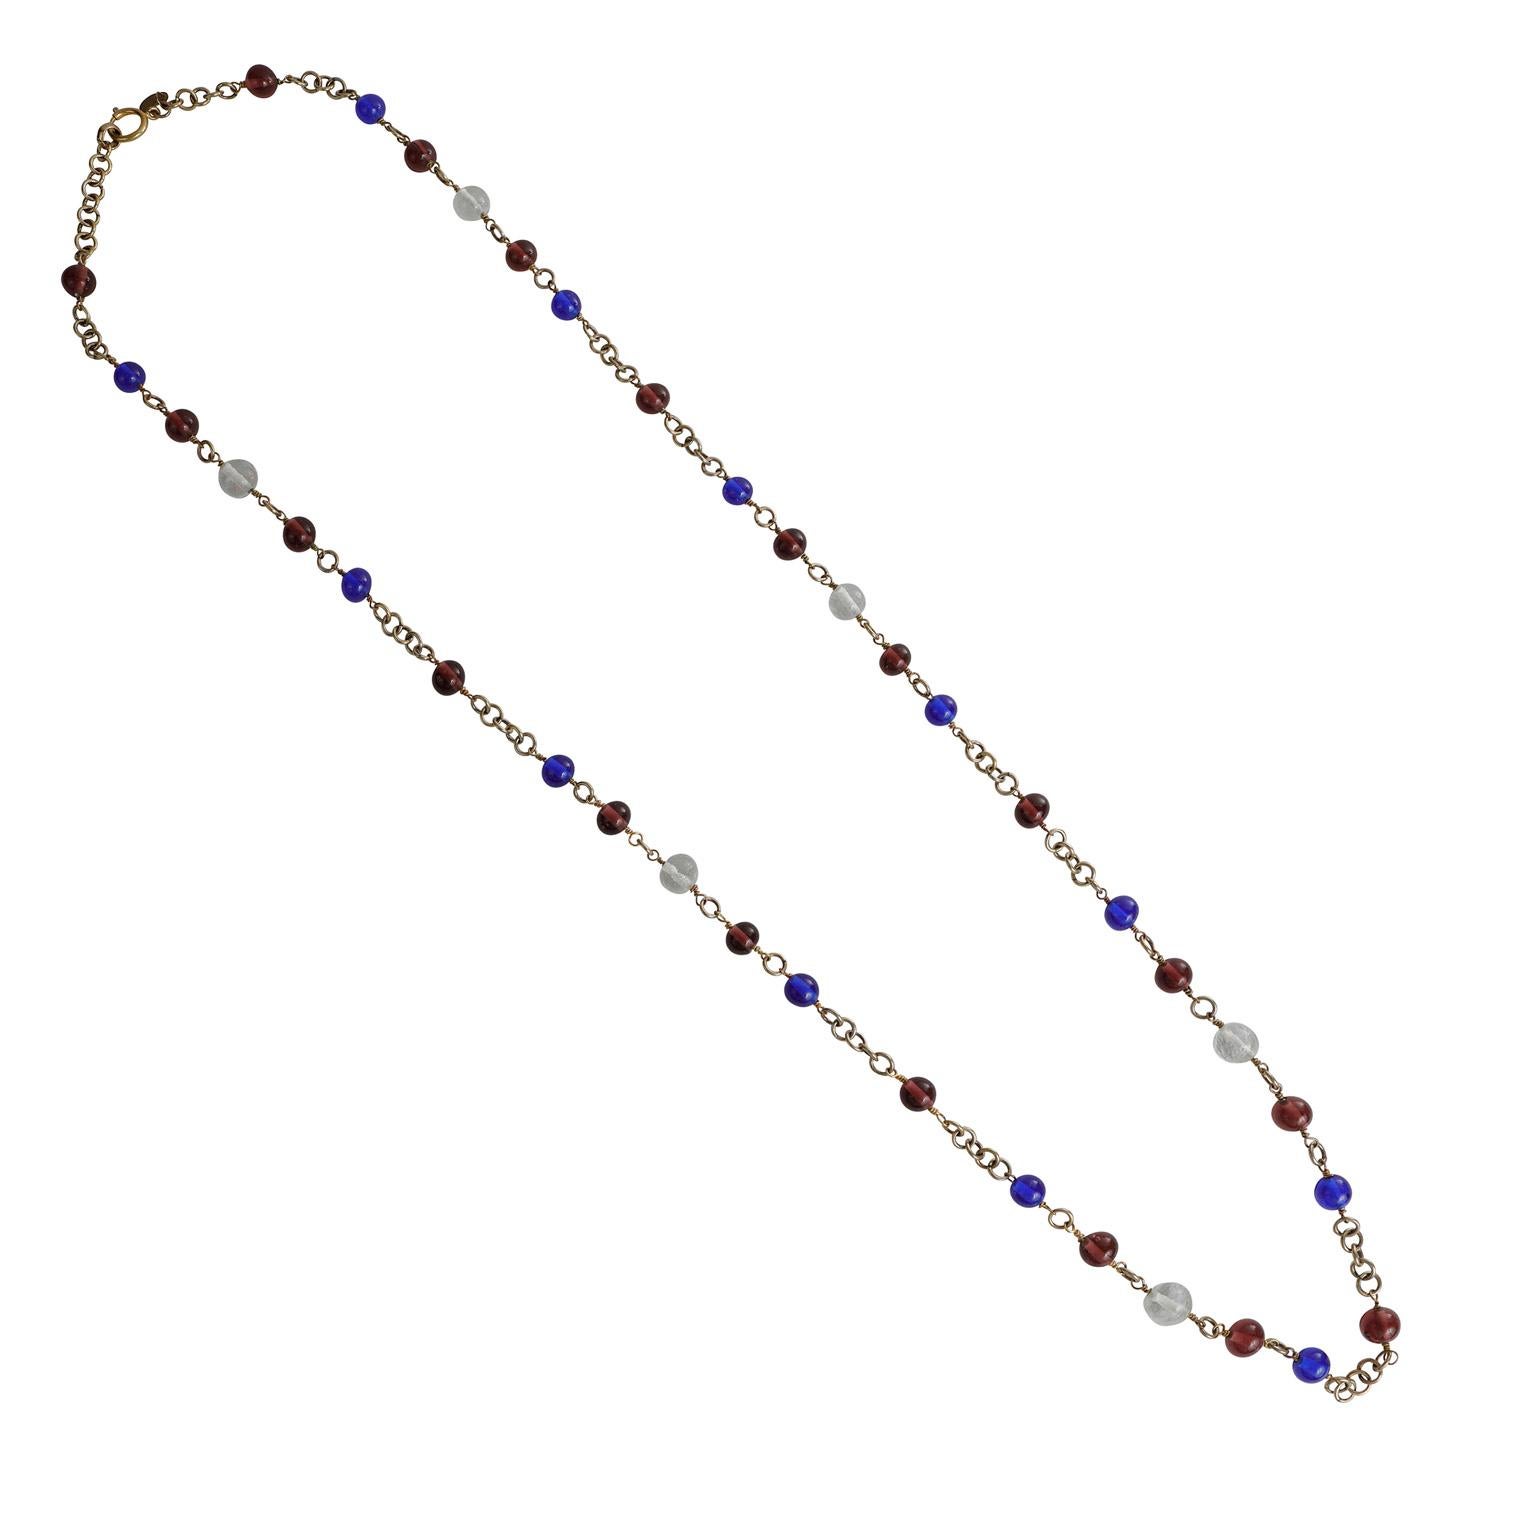 Cet authentique collier Chanel en perles Gripoix violettes et bleues est en excellent état vintage des années 1980.  Des perles en verre Gripoix bleu cobalt, violet et transparent sont situées tout au long d'une longue chaîne de couleur or à